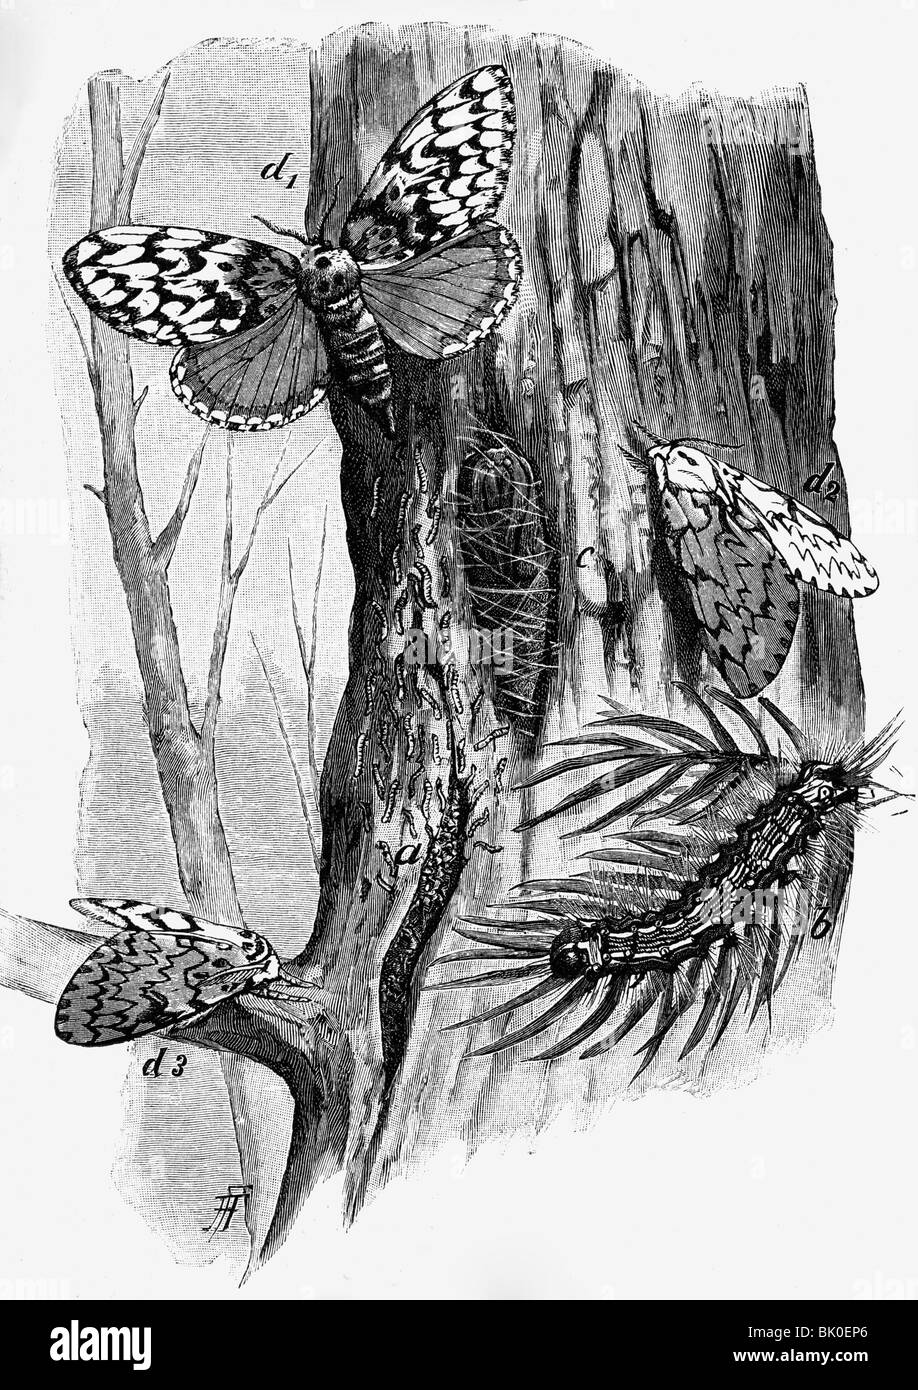 Zoologie, insectes, papillons, Nun Moth (Lymantria monacha), gravure sur bois après dessin par Federer, 2ème moitié du 19ème siècle, animaux, teramèrement, arches noires, caterpillar, cocon, historique, historique, Banque D'Images